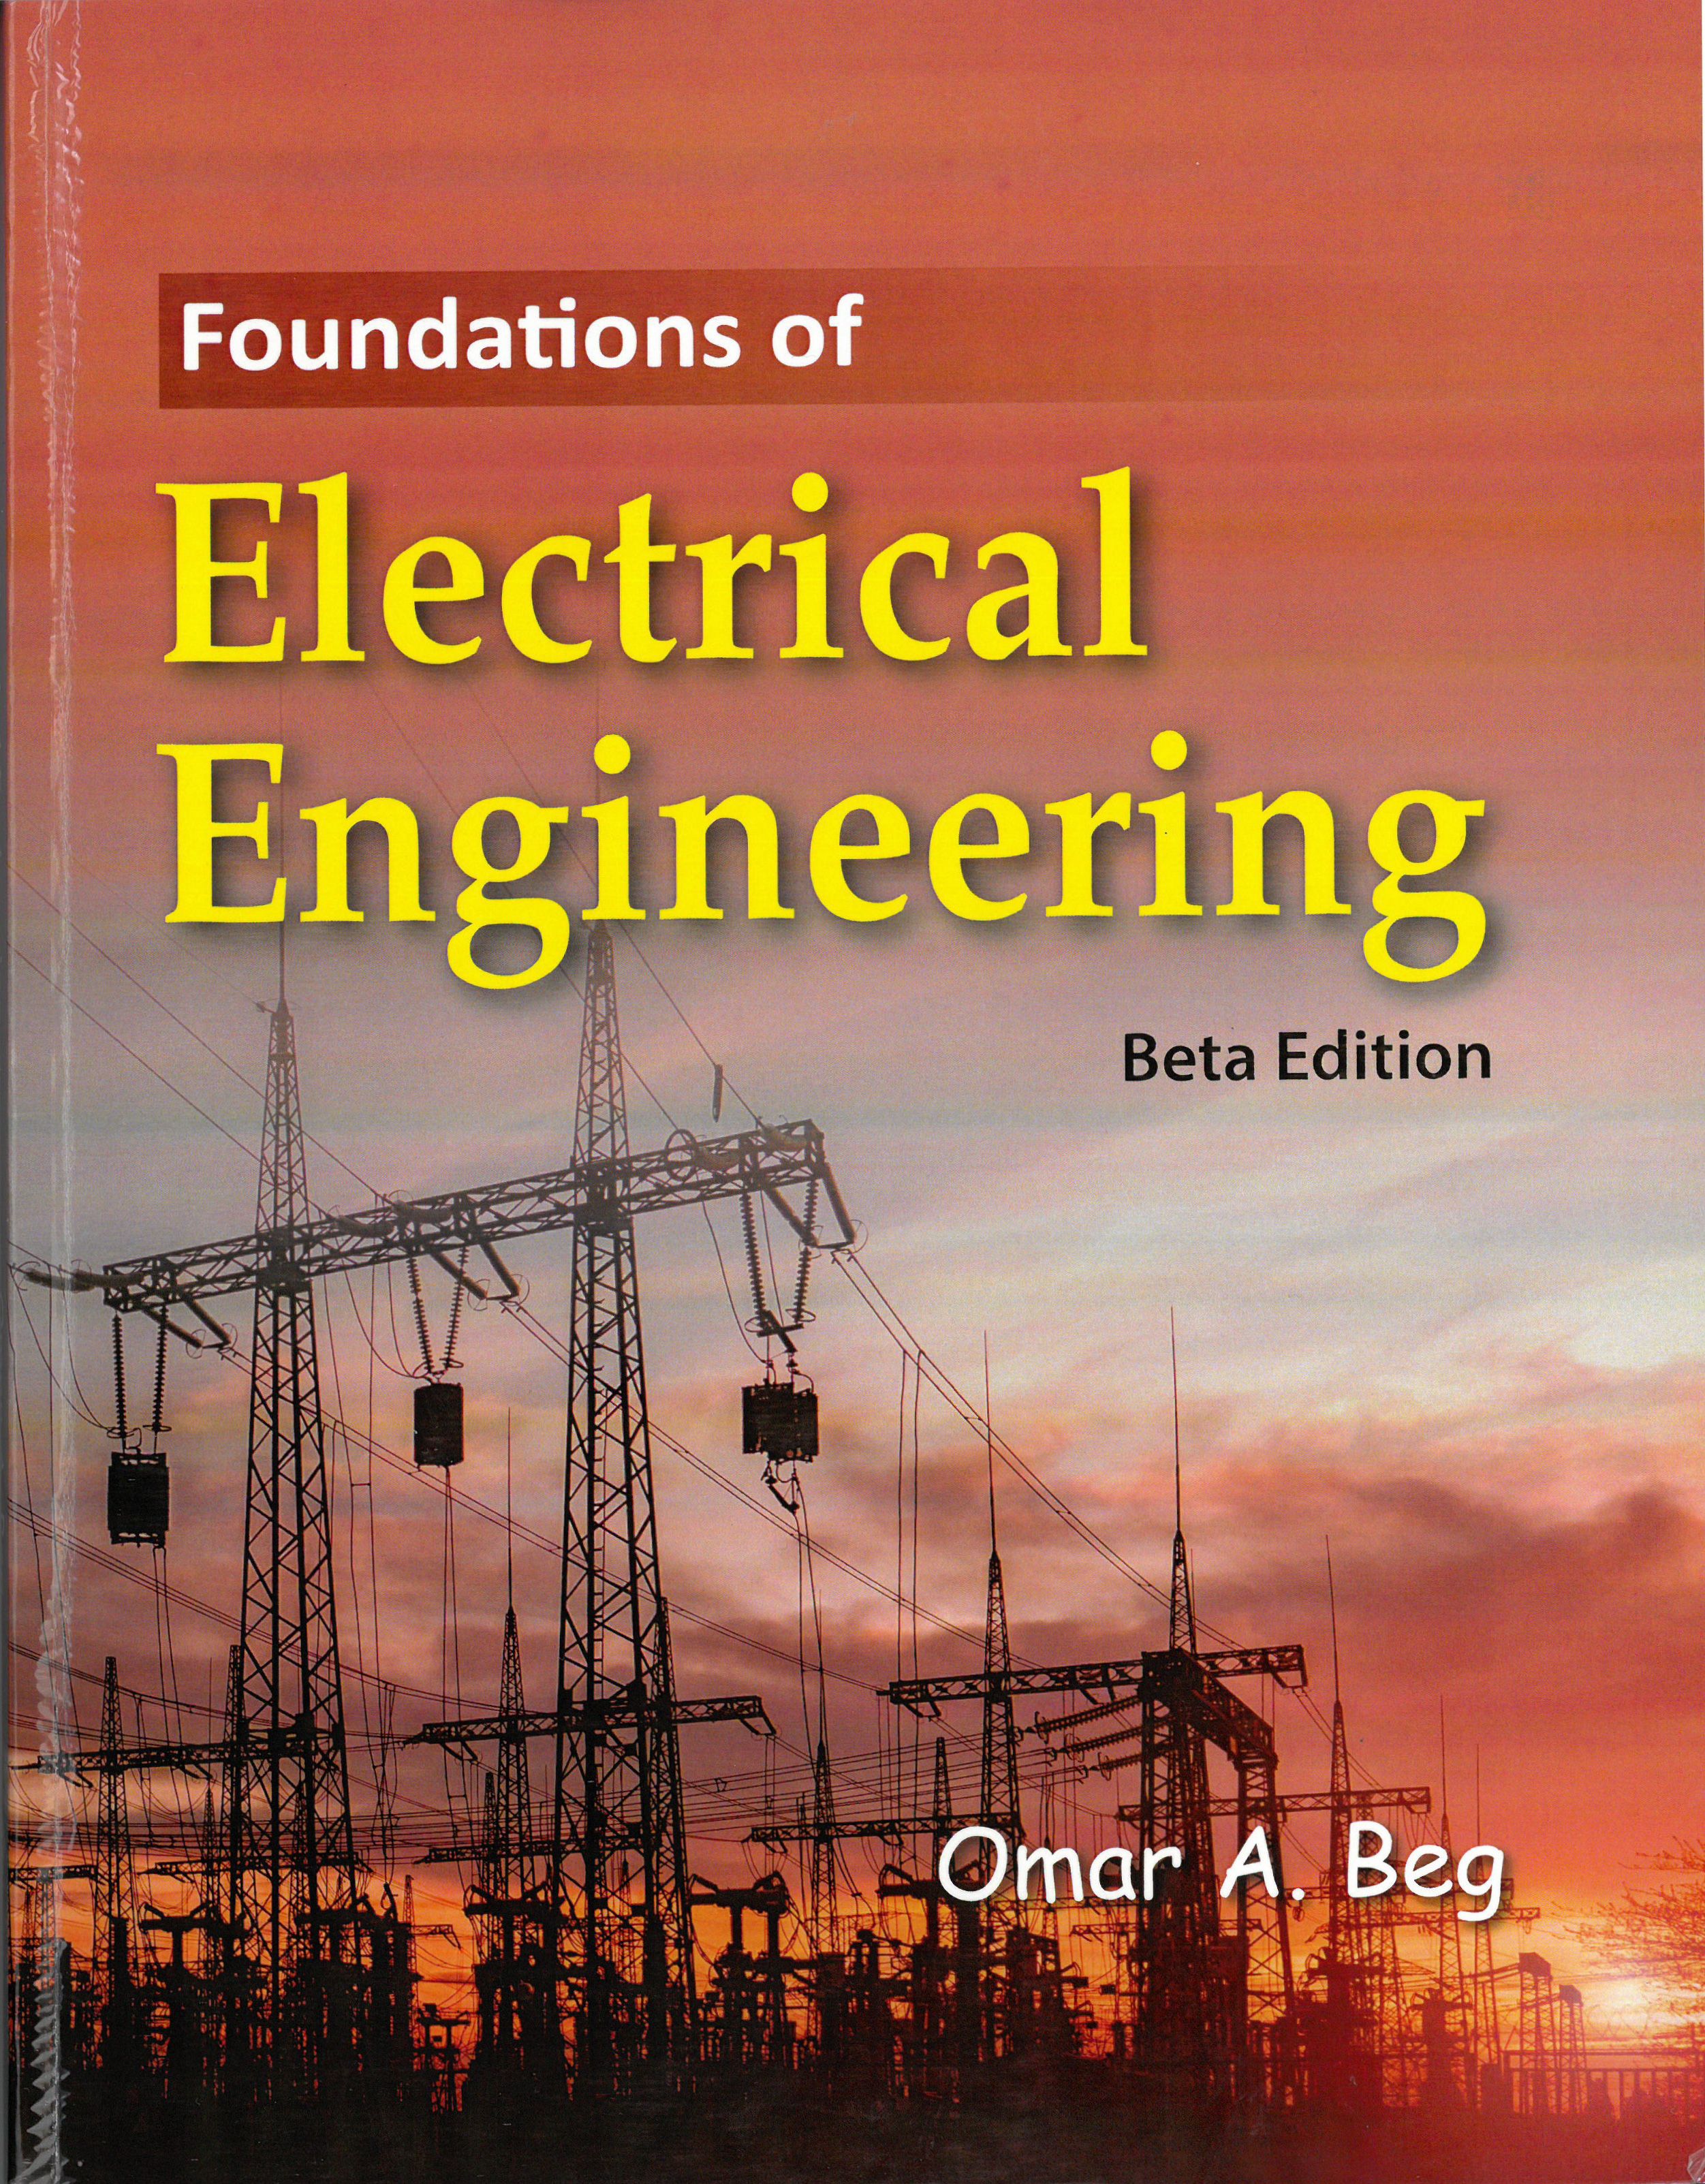 Fundamentos de ingeniería eléctrica de Omar Beg, página de título del libro